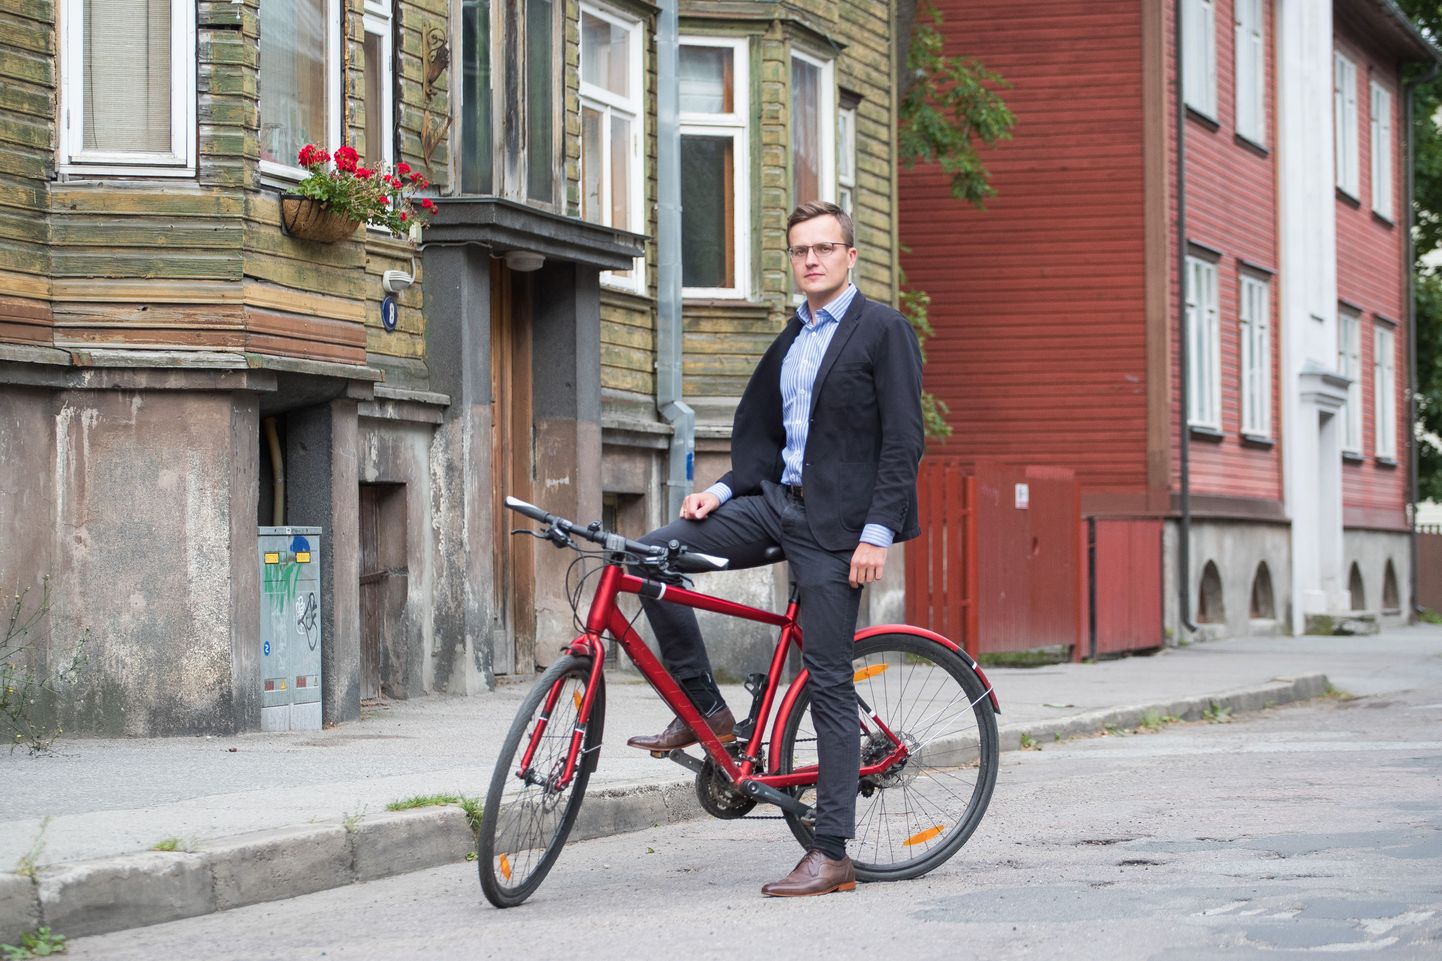 Хоть место работы Таави Тильманна и находится в Лондоне, живет он в Эстонии. Довольно часто ученый использует для поездок по столице велосипед.